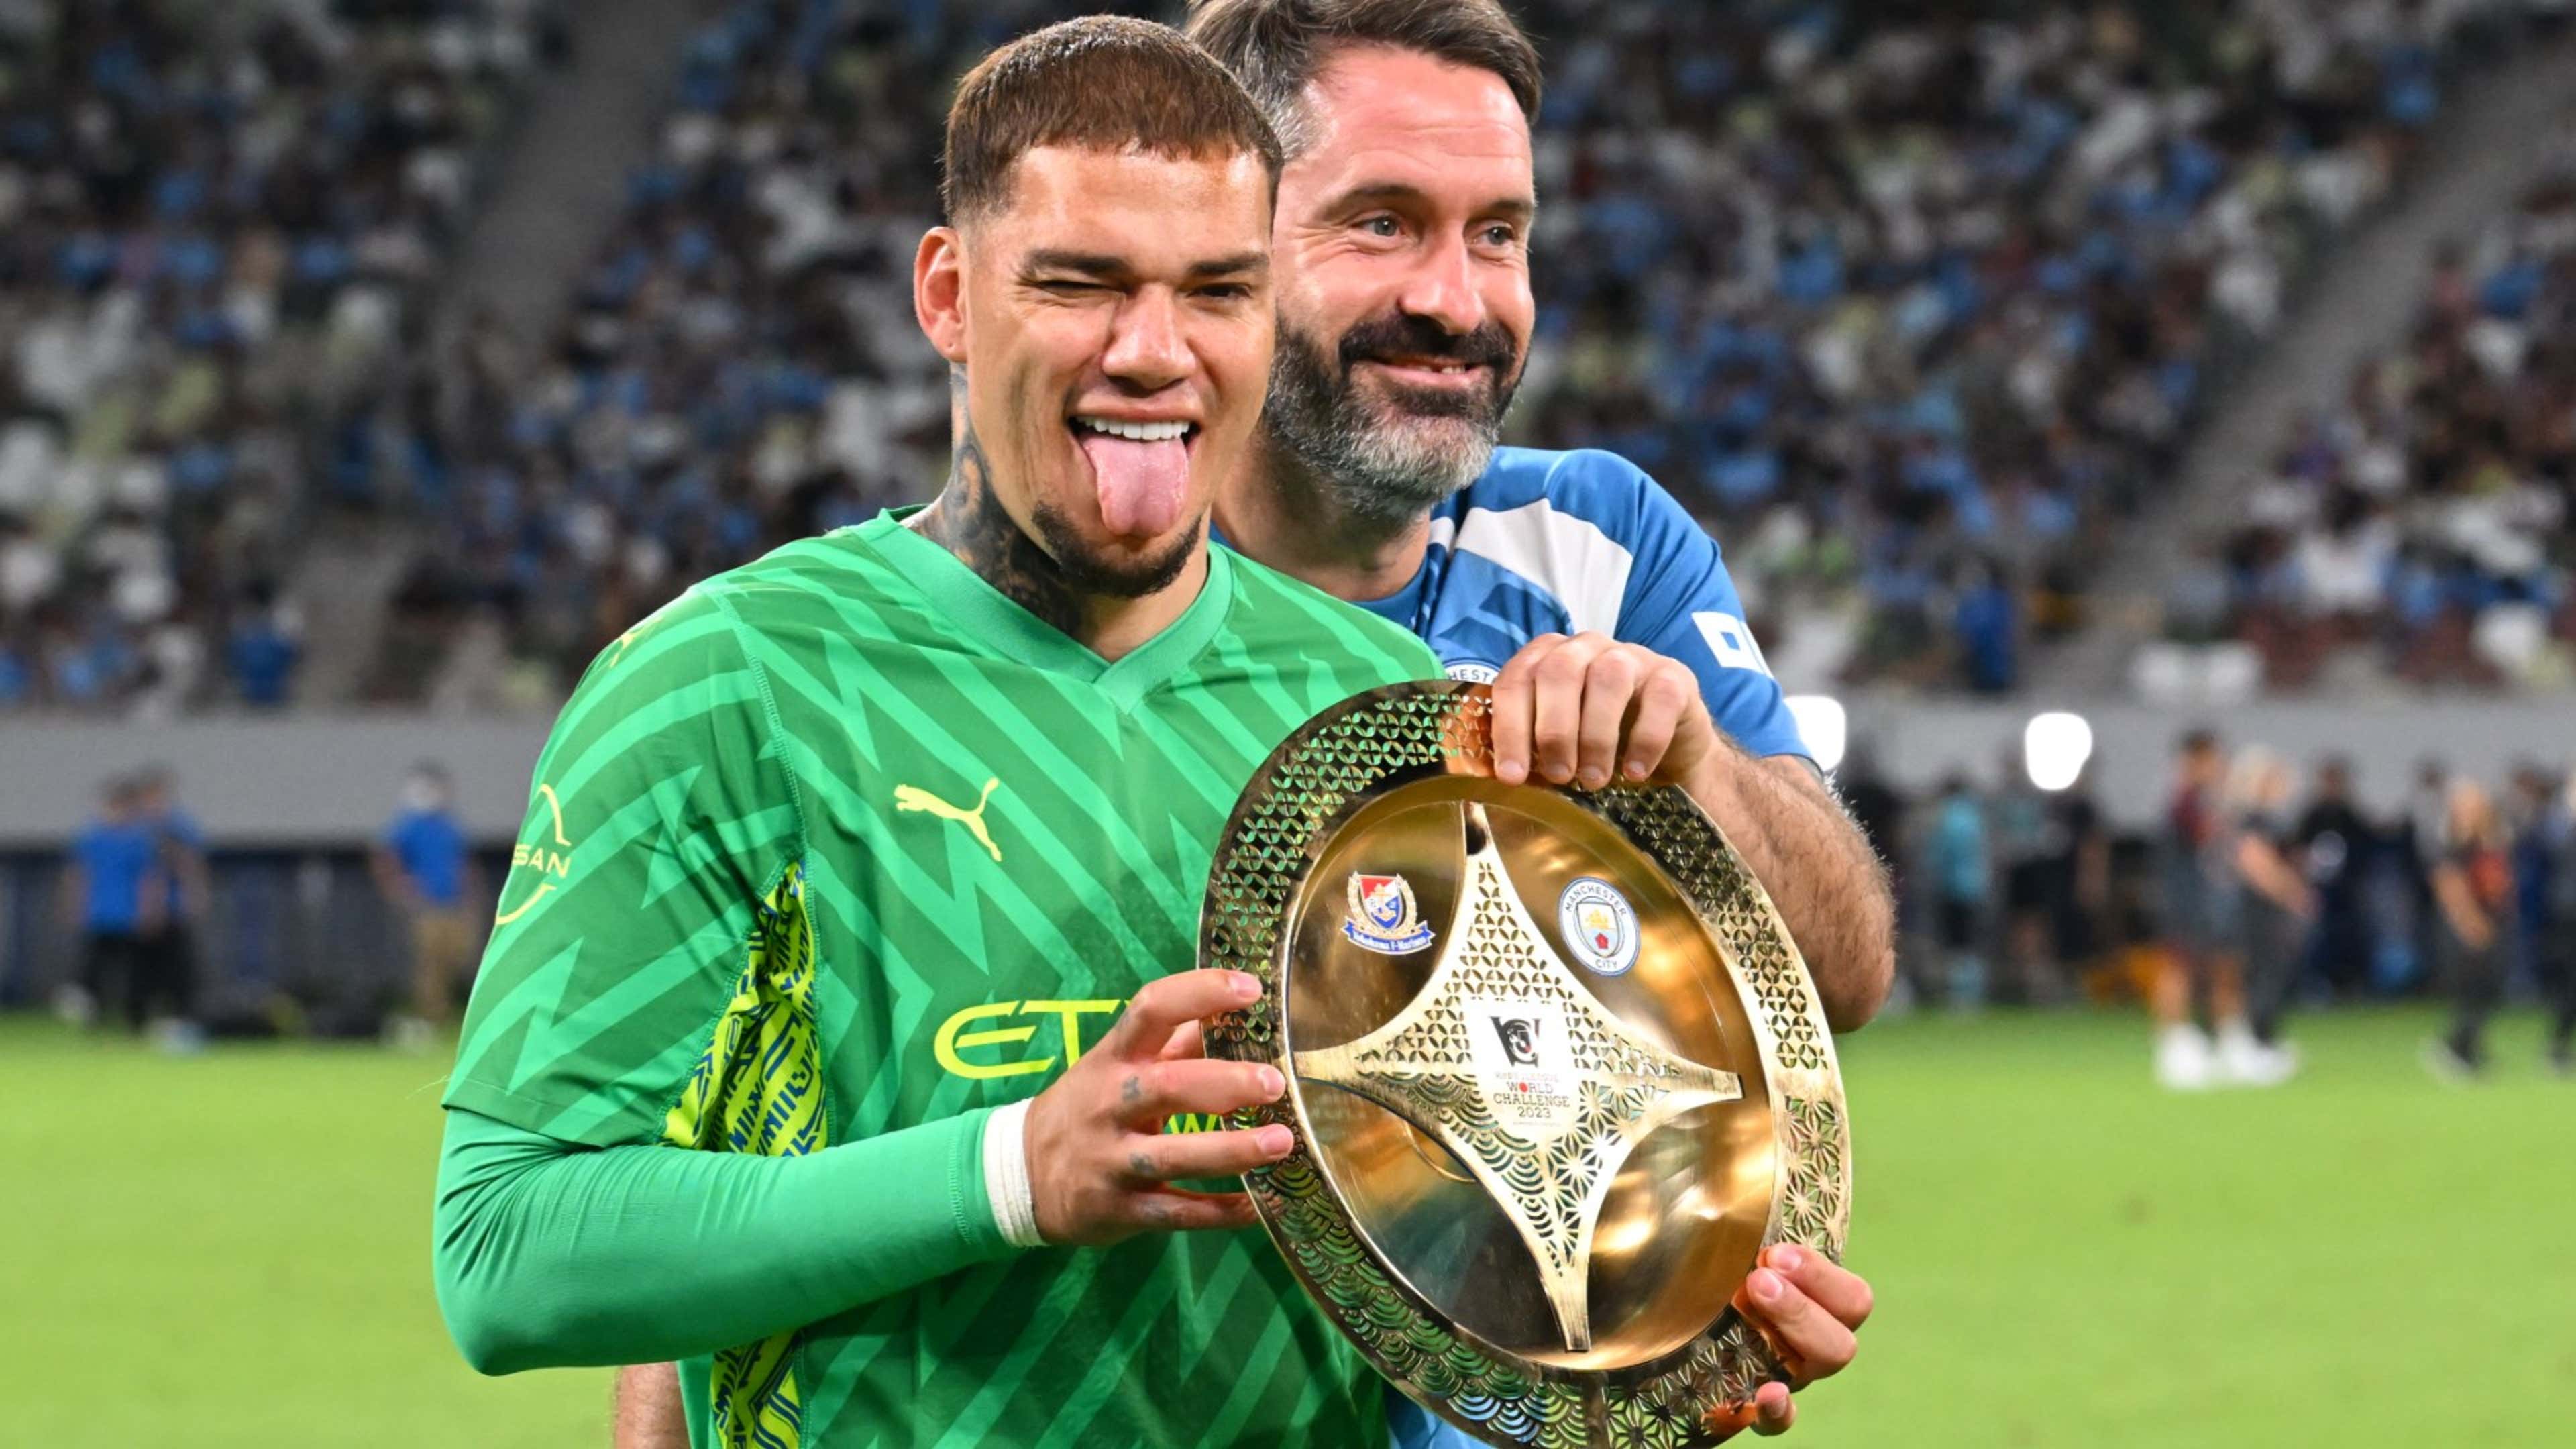 Goleiro campeão da Copa do Brasil será premiado com troféu